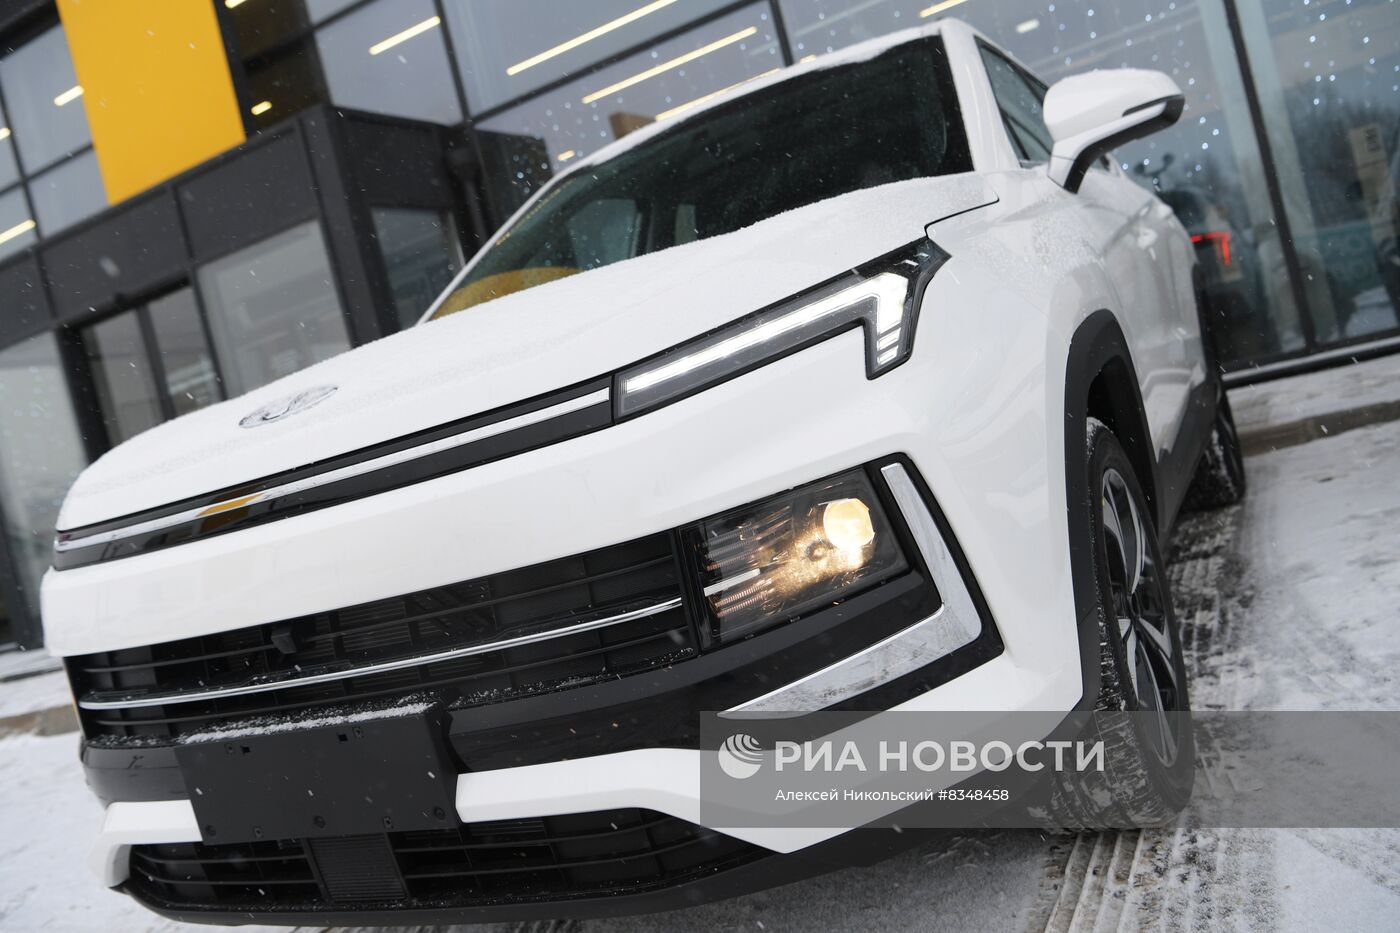 Первые автомобили "Москвич" поступили в розничную продажу